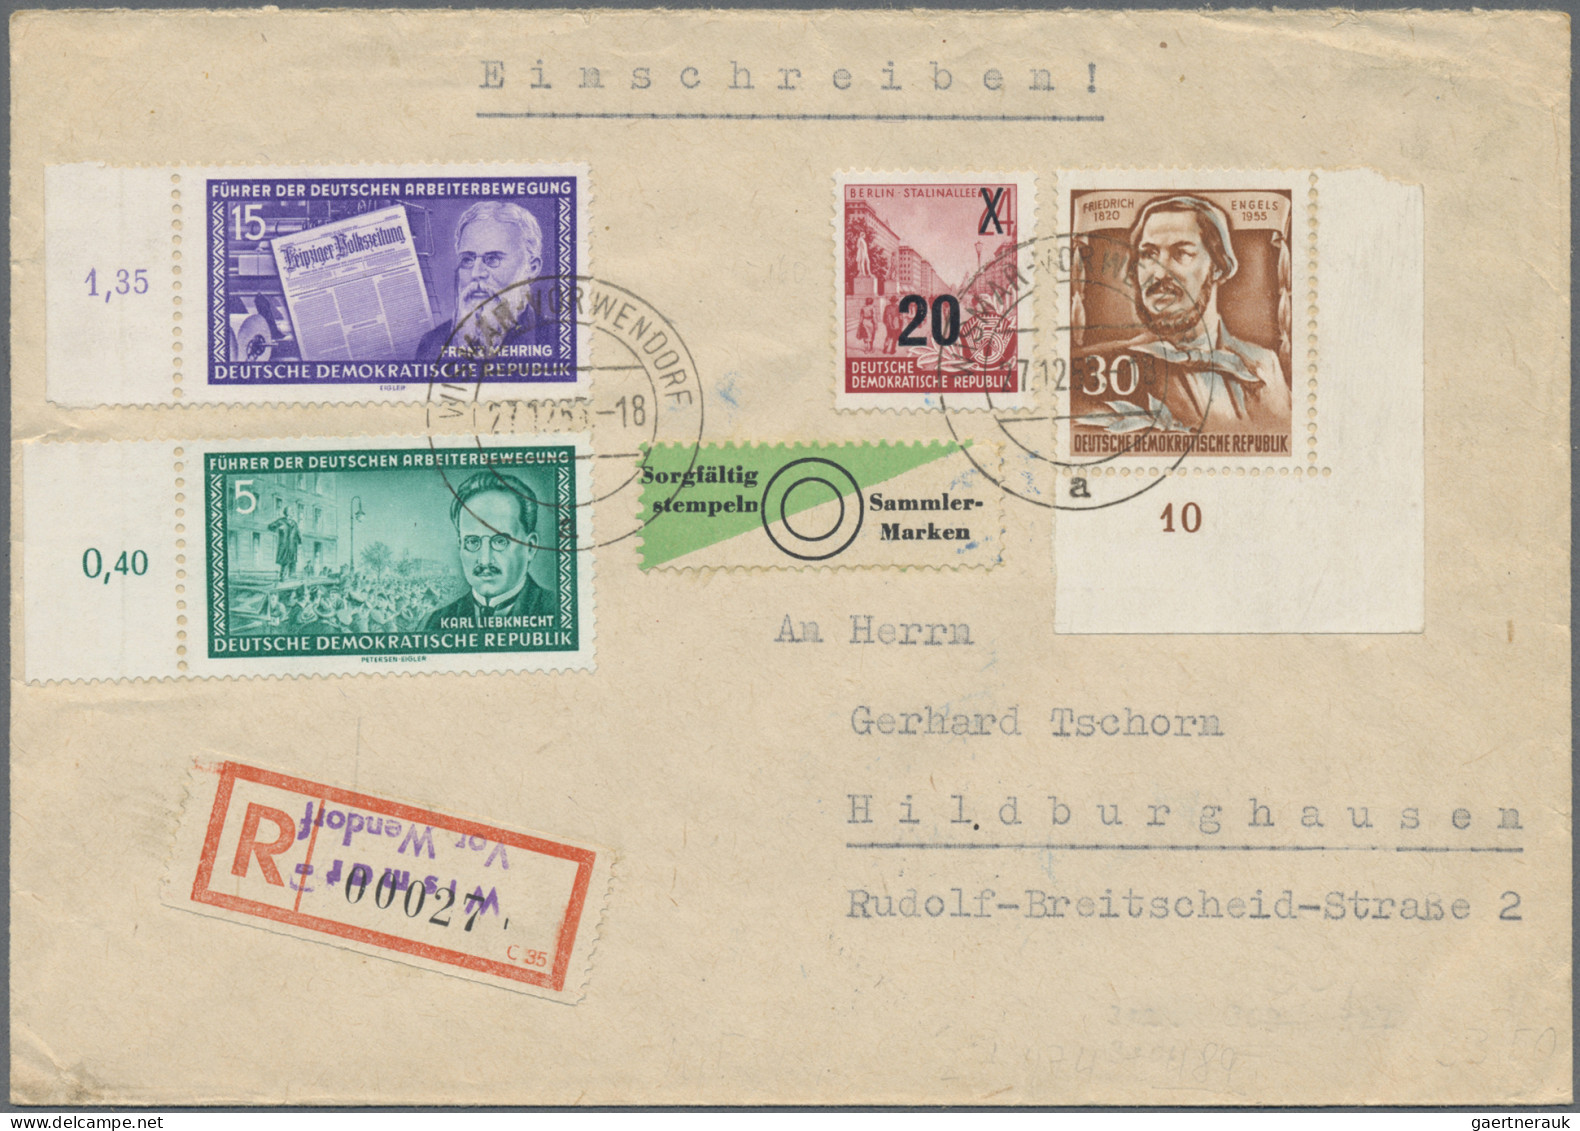 DDR: 1950/1964, Partie von 27 Briefen und Karten mit interessanten Frankaturen d